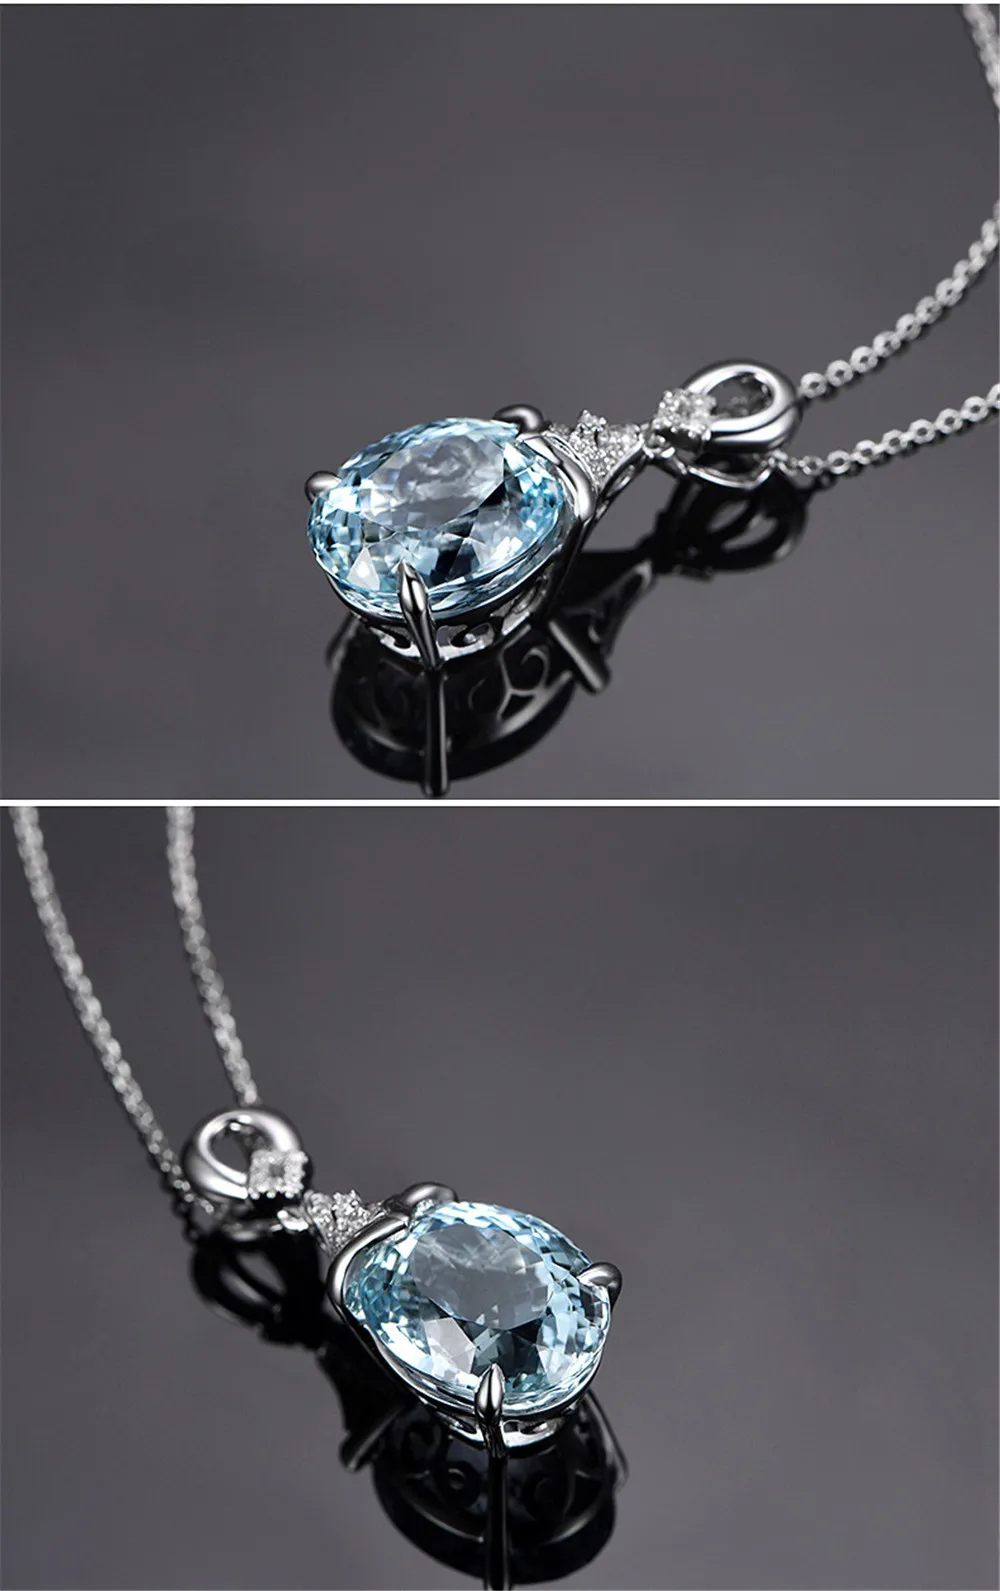 Аквамарин подвеска с синим кристаллом ожерелье для женщин Девушка стерлингового серебра Белый позолоченный Циркон Алмаз 5 карат драгоценный камень ювелирный подарок